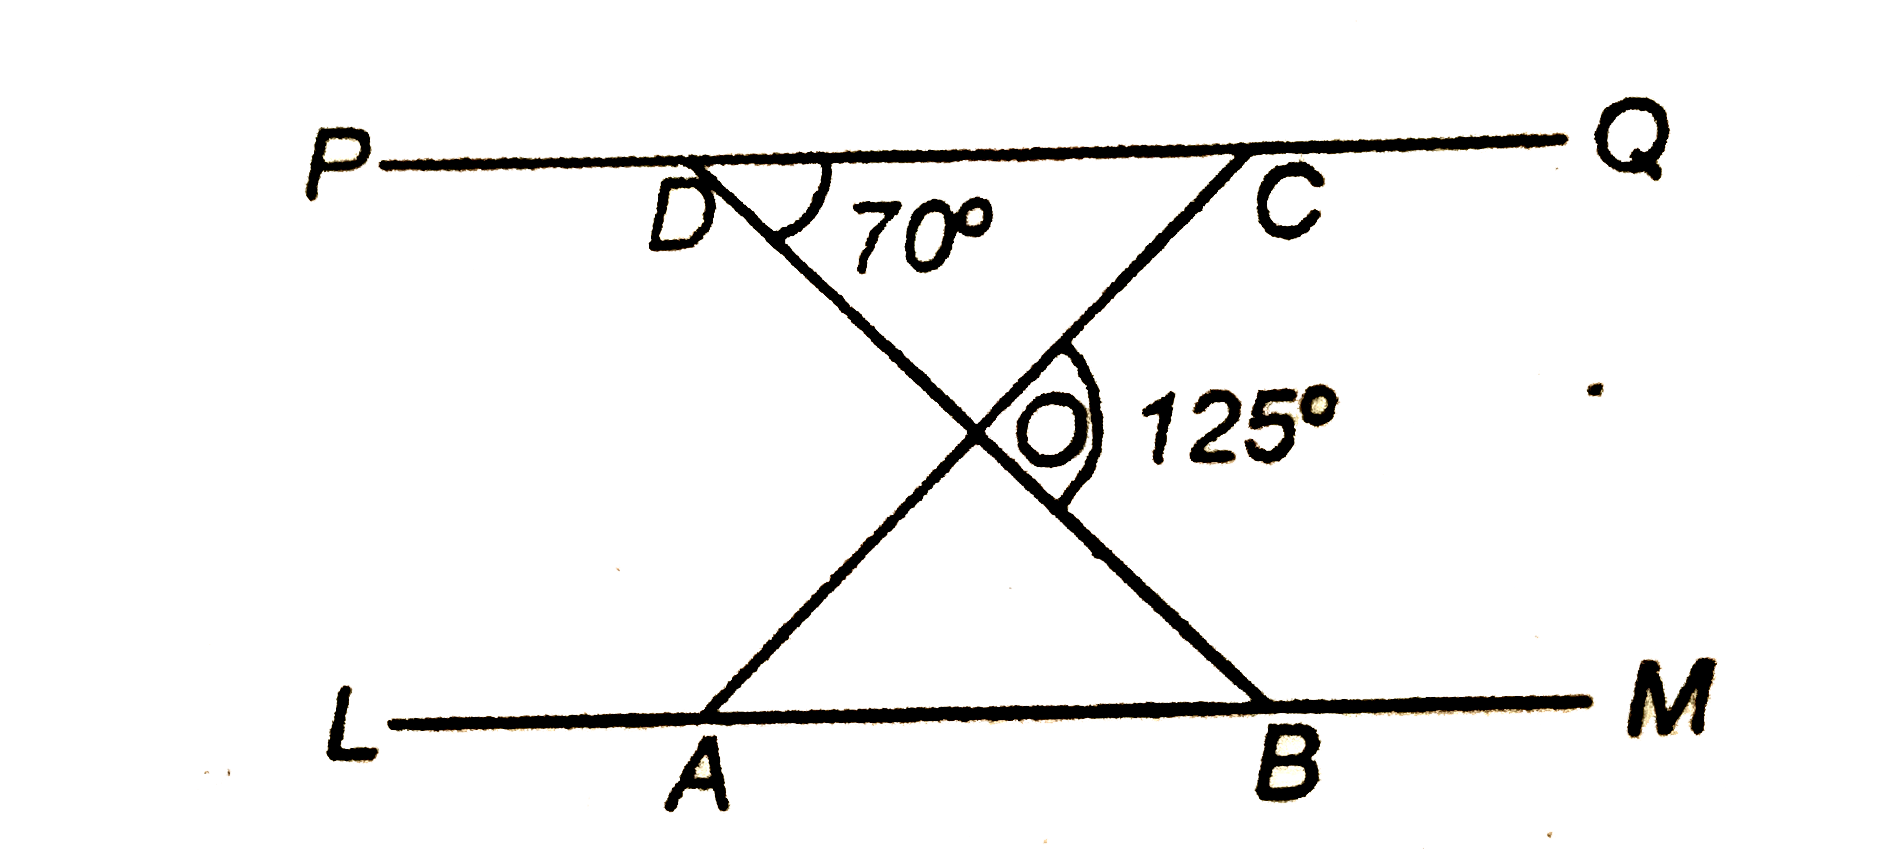 दी गई आकृति में यदि LM || PQ, angle BOC = 125^(@)  तथा angleCDO=70^(@)  है, तो angleDOC तथा angleDCO ज्ञात करें।